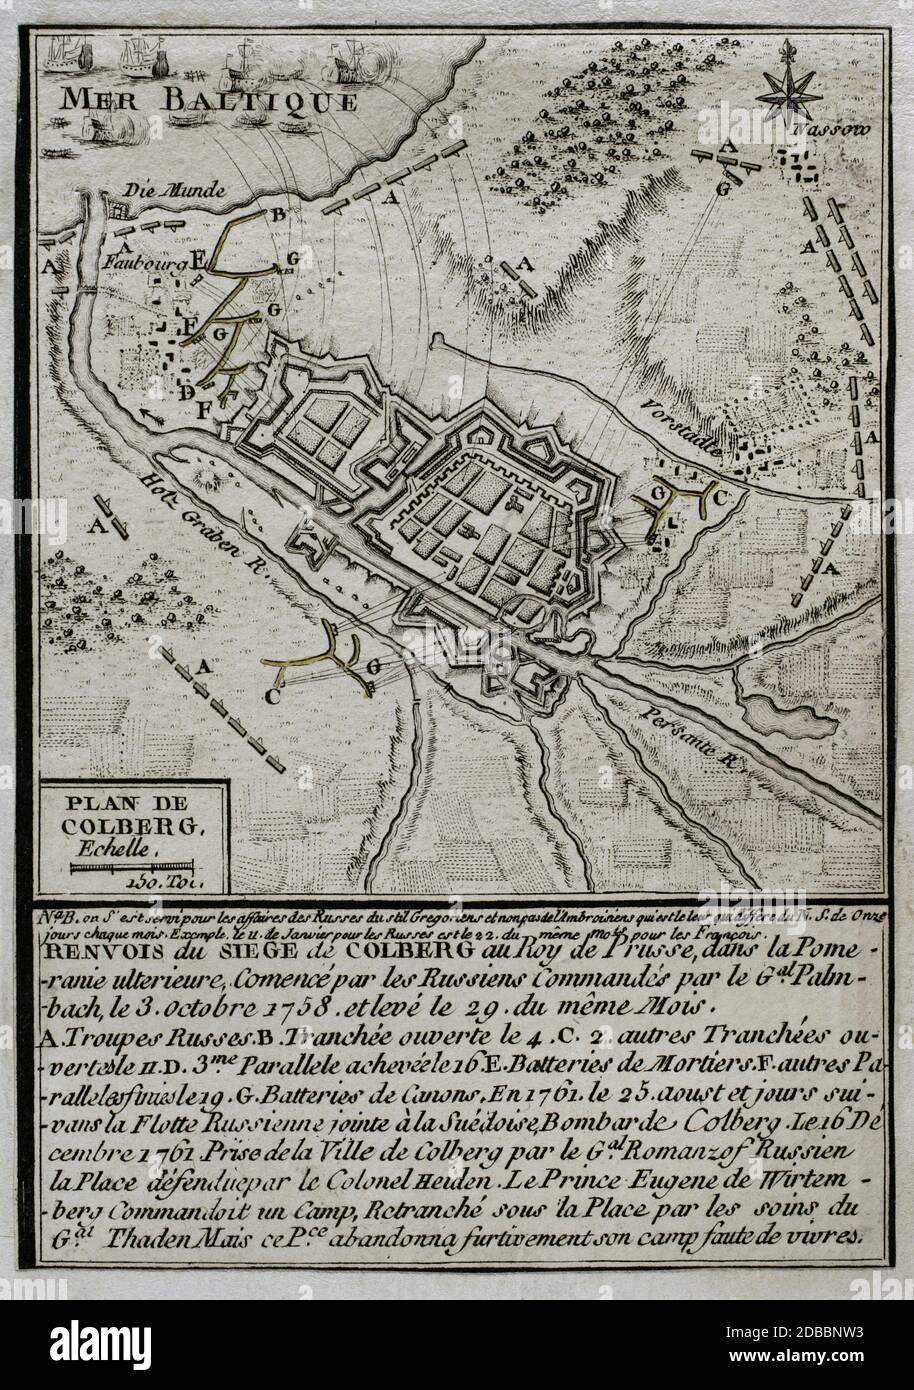 Guerra de los Siete Años. Sitio de Kolberg. La Pomerania Prusiana, actualmente denominada Kolobrzeg. Fué asediada en tres ocasiones por el ejército Russo. Los dos primeros asedios, del 3 de octubre al 29 de octubre de 1758 y del 26 de agosto al 18 de septiembre de 1760, no tuvieron éxito. El asedio final fué realizado con éxito entro l'agosto y dicembre de 1761. El 16 de diciembre de 1761 Kolberg fué tomada por el General Rumyantsev. Plano di Kolberg. Grabado publicado en 1765 por el cartógrafo Jean de Beaurain (1696-1771) como ilustración de su Gran mapa de A Foto Stock